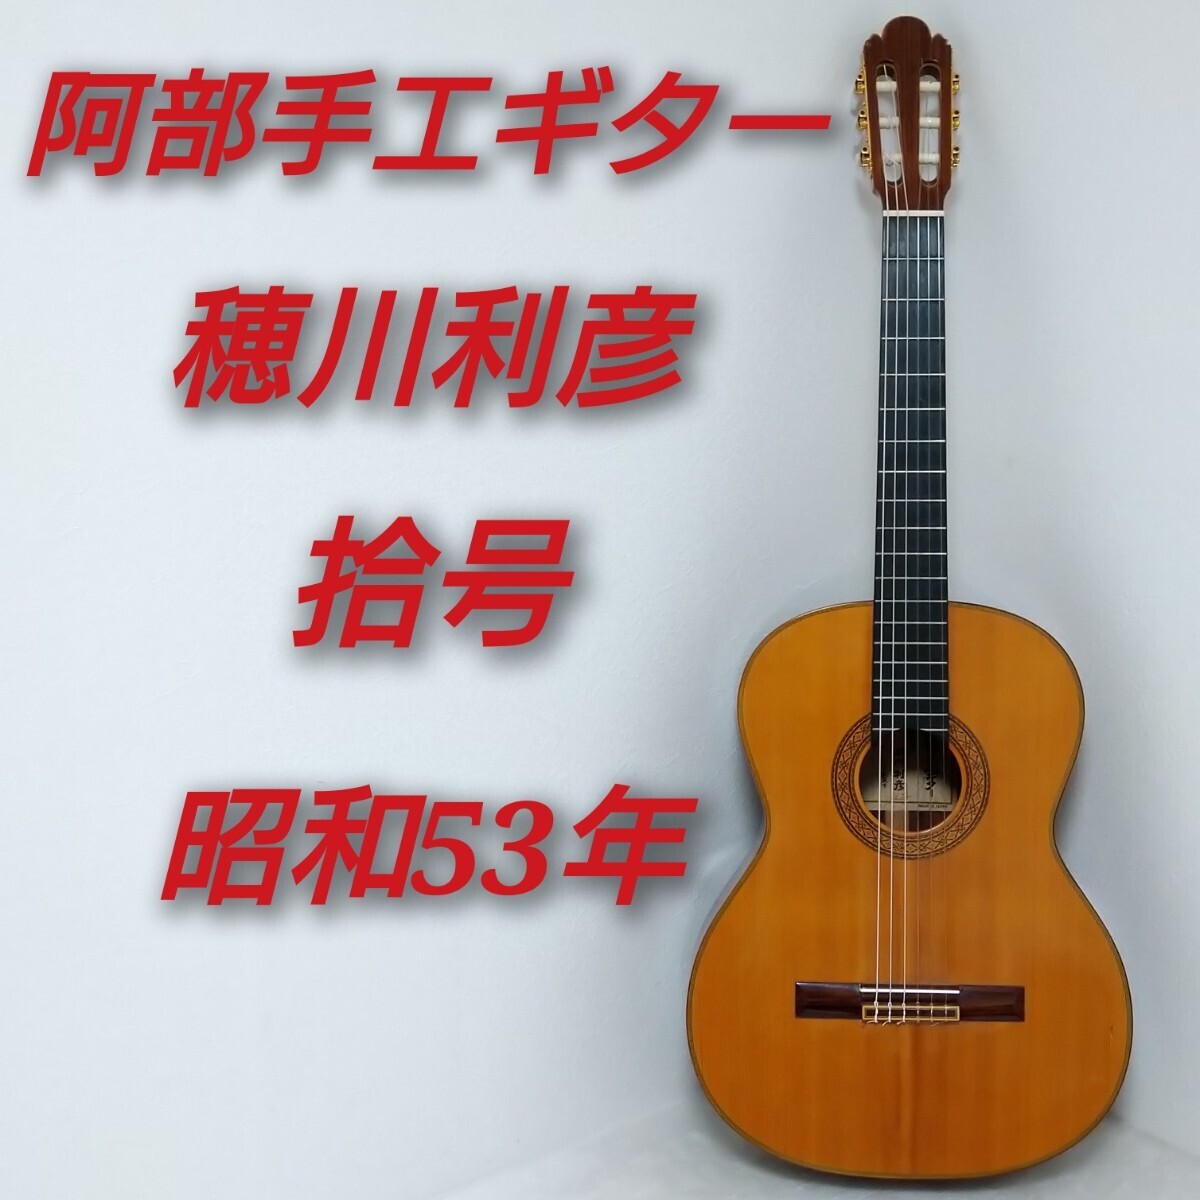 阿部手工ギター 製作者 穂川利彦 拾号 10号 昭和53年製 クラシックギター MADE IN JAPAN 日本製_画像1